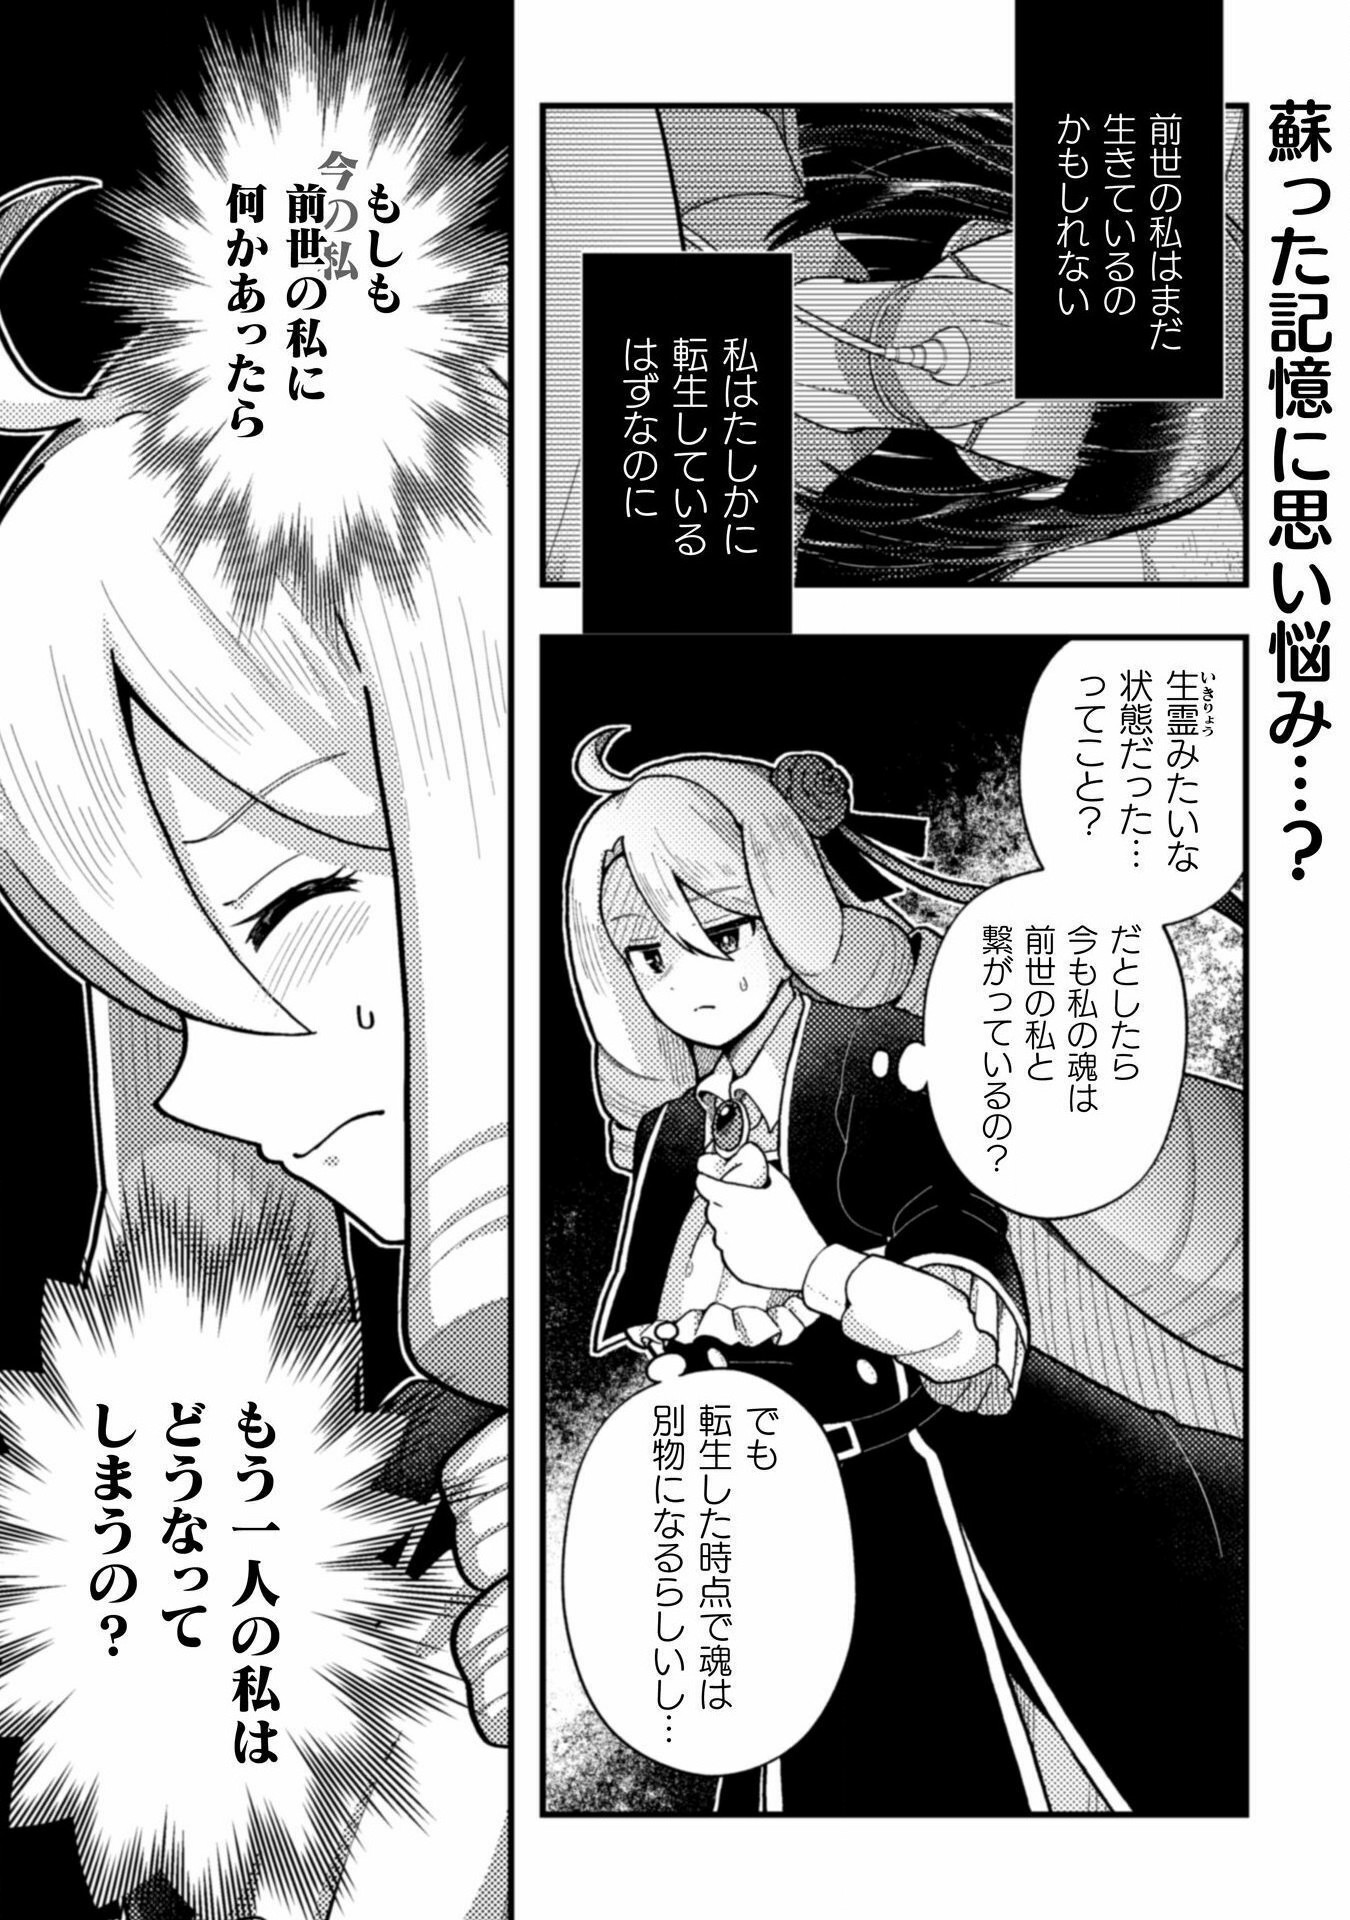 Otome Game no Akuyaku Reijou ni Tensei shitakedo Follower ga Fukyoushiteta Chisiki shikanai - Chapter 21 - Page 3